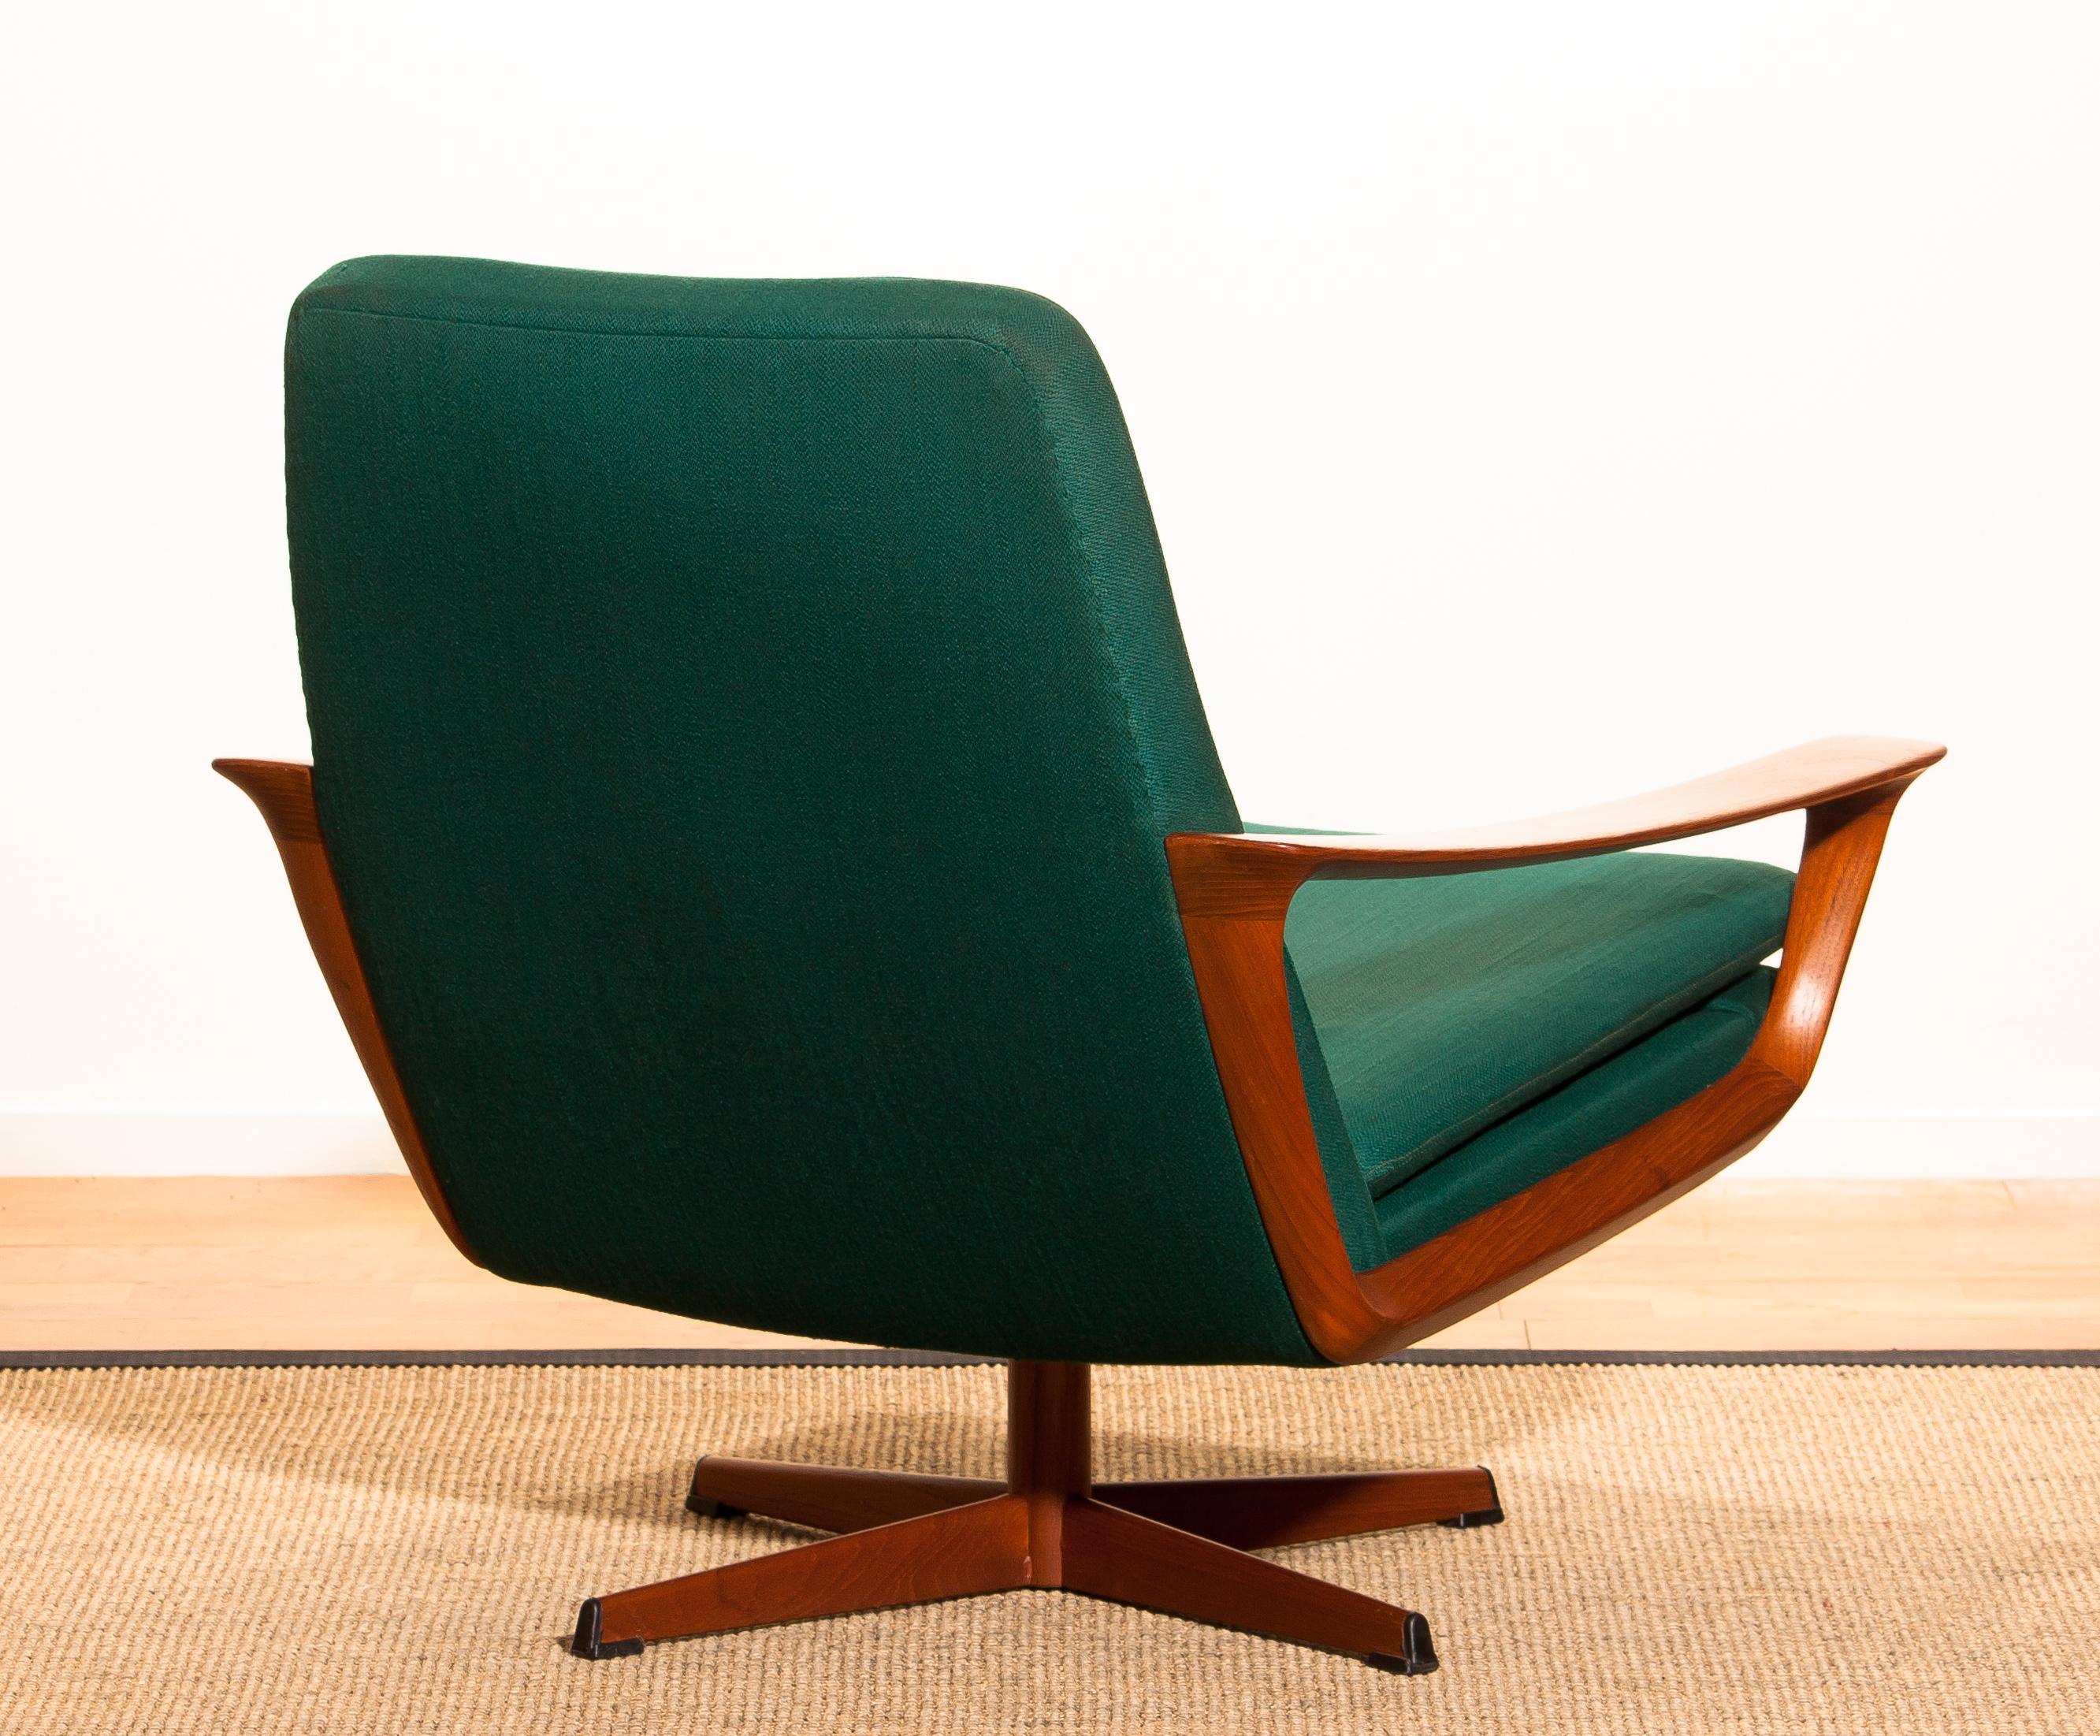 Danish 1960s, Teak Swivel Chair by Johannes Andersen for Trensum, Denmark